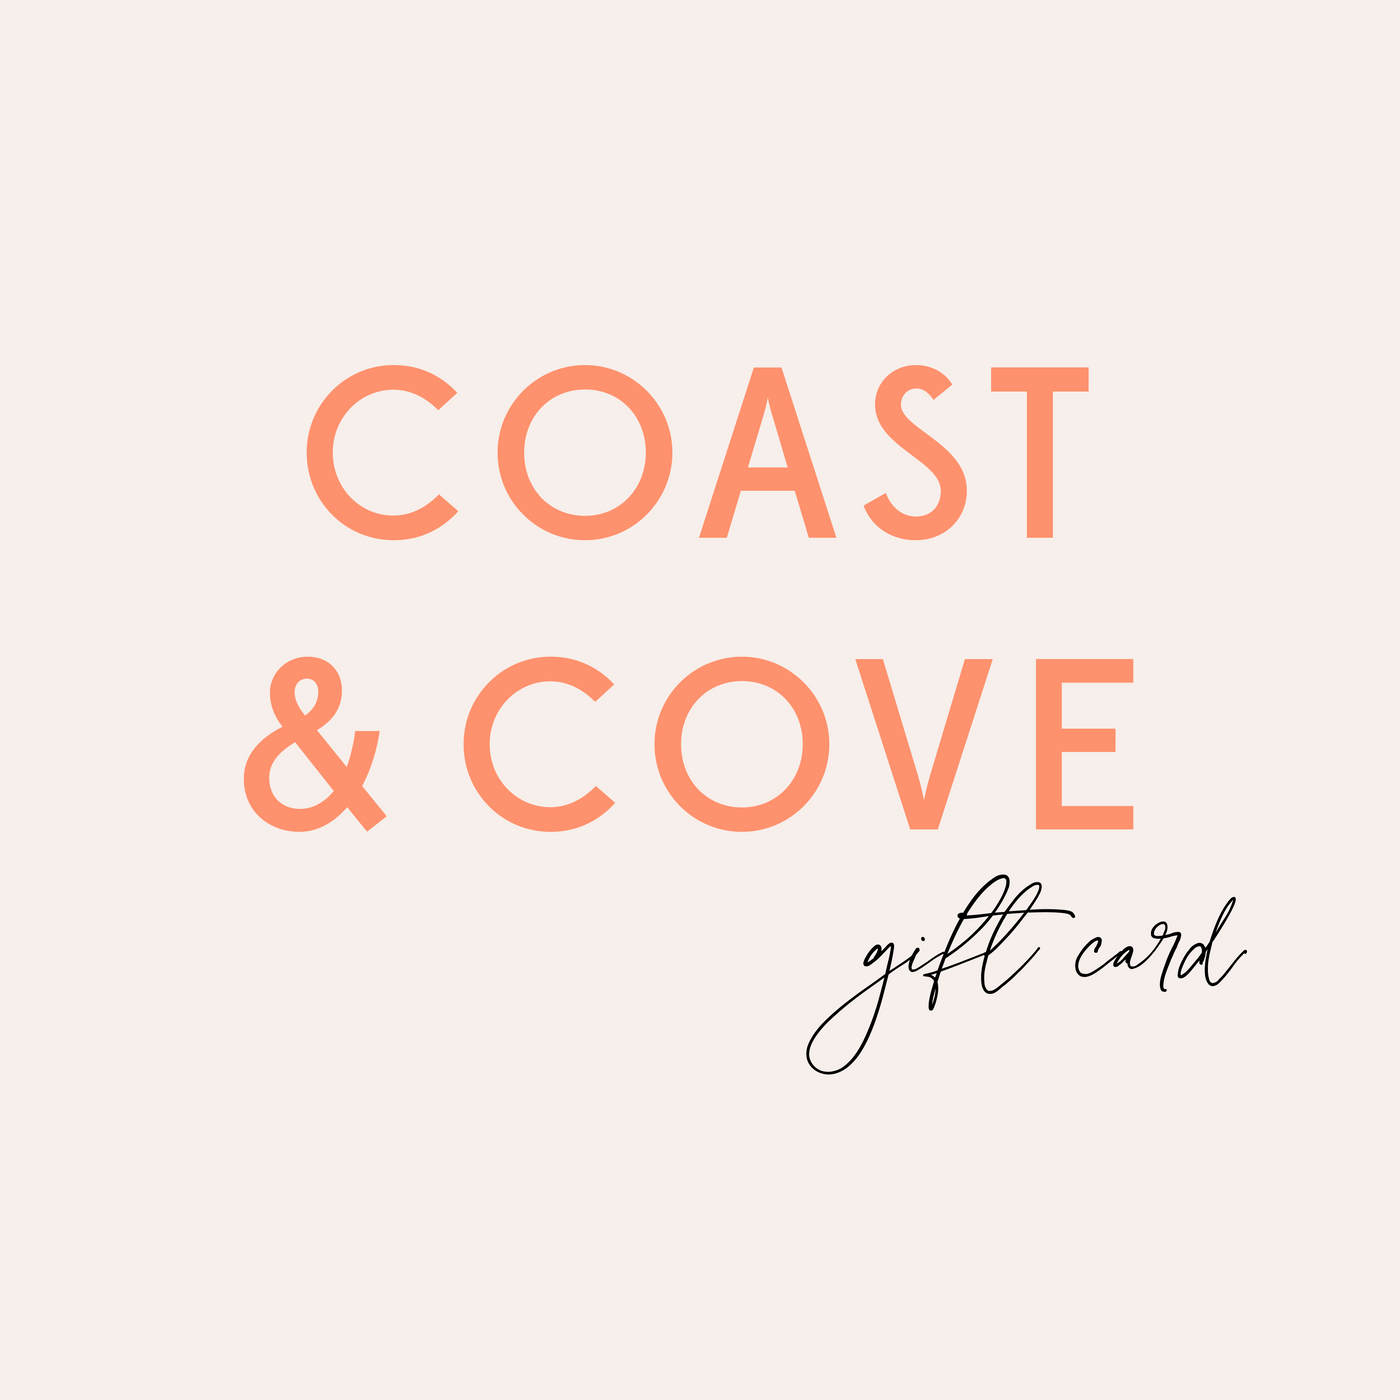 Coast & Cove Gift Card